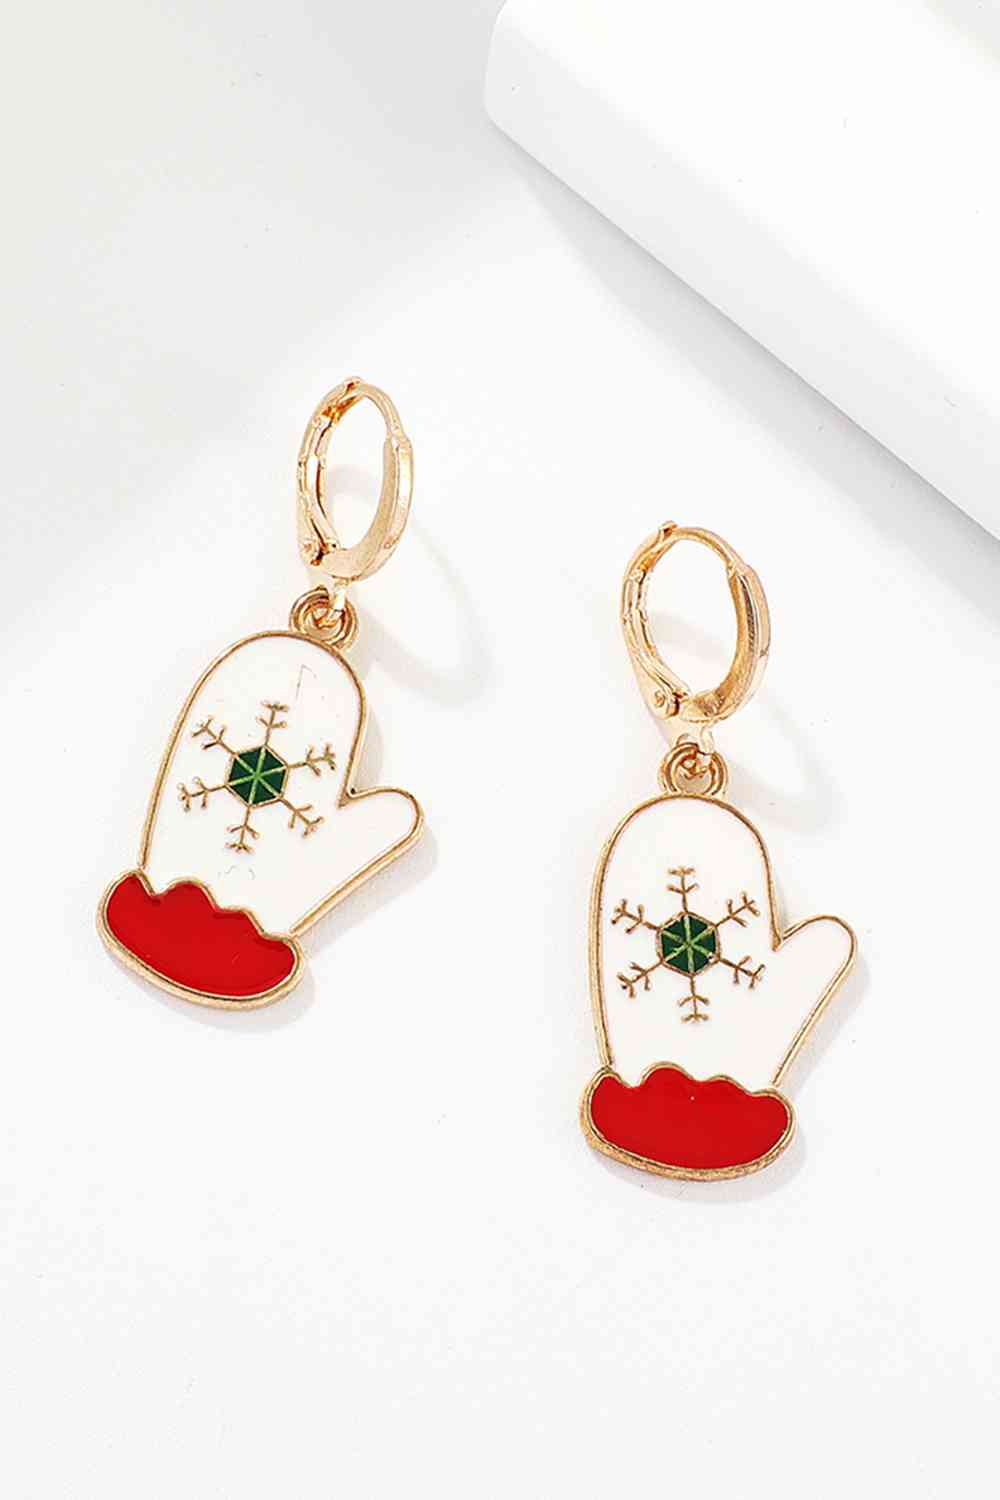 Christmas Theme Alloy Earrings - Women’s Jewelry - Earrings - 21 - 2024